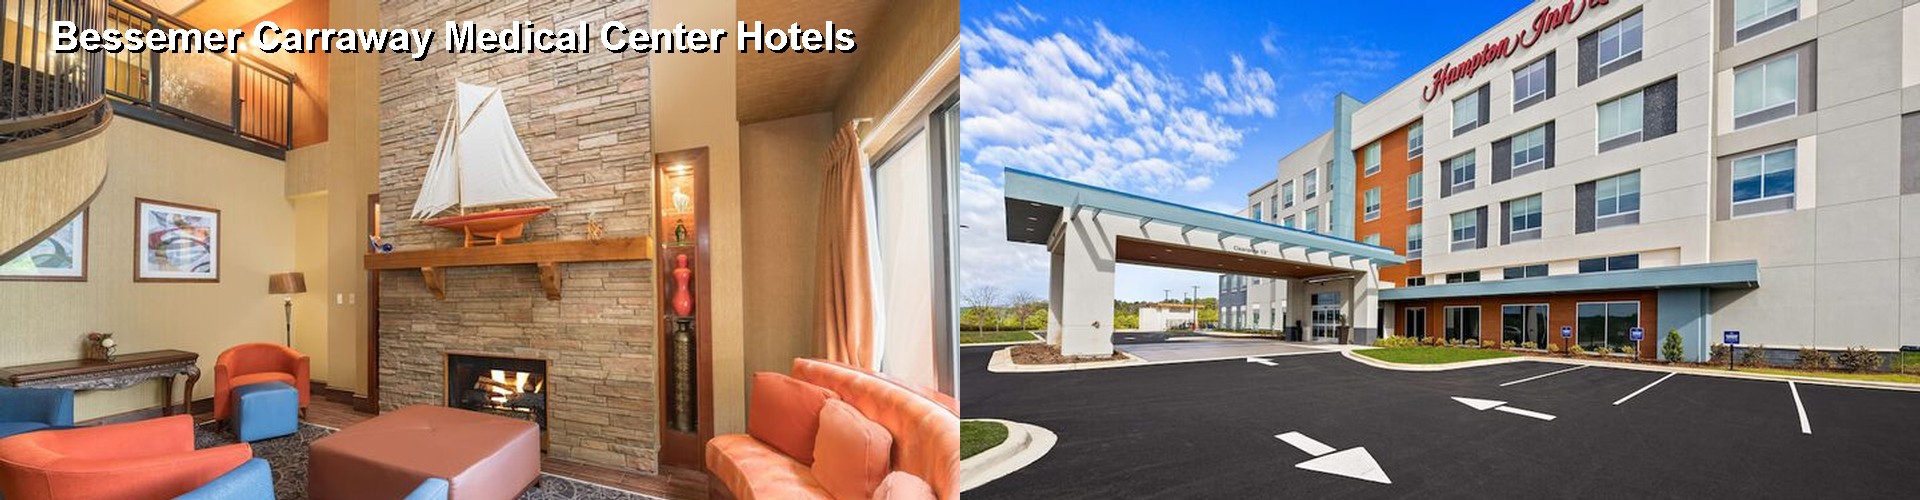 3 Best Hotels near Bessemer Carraway Medical Center